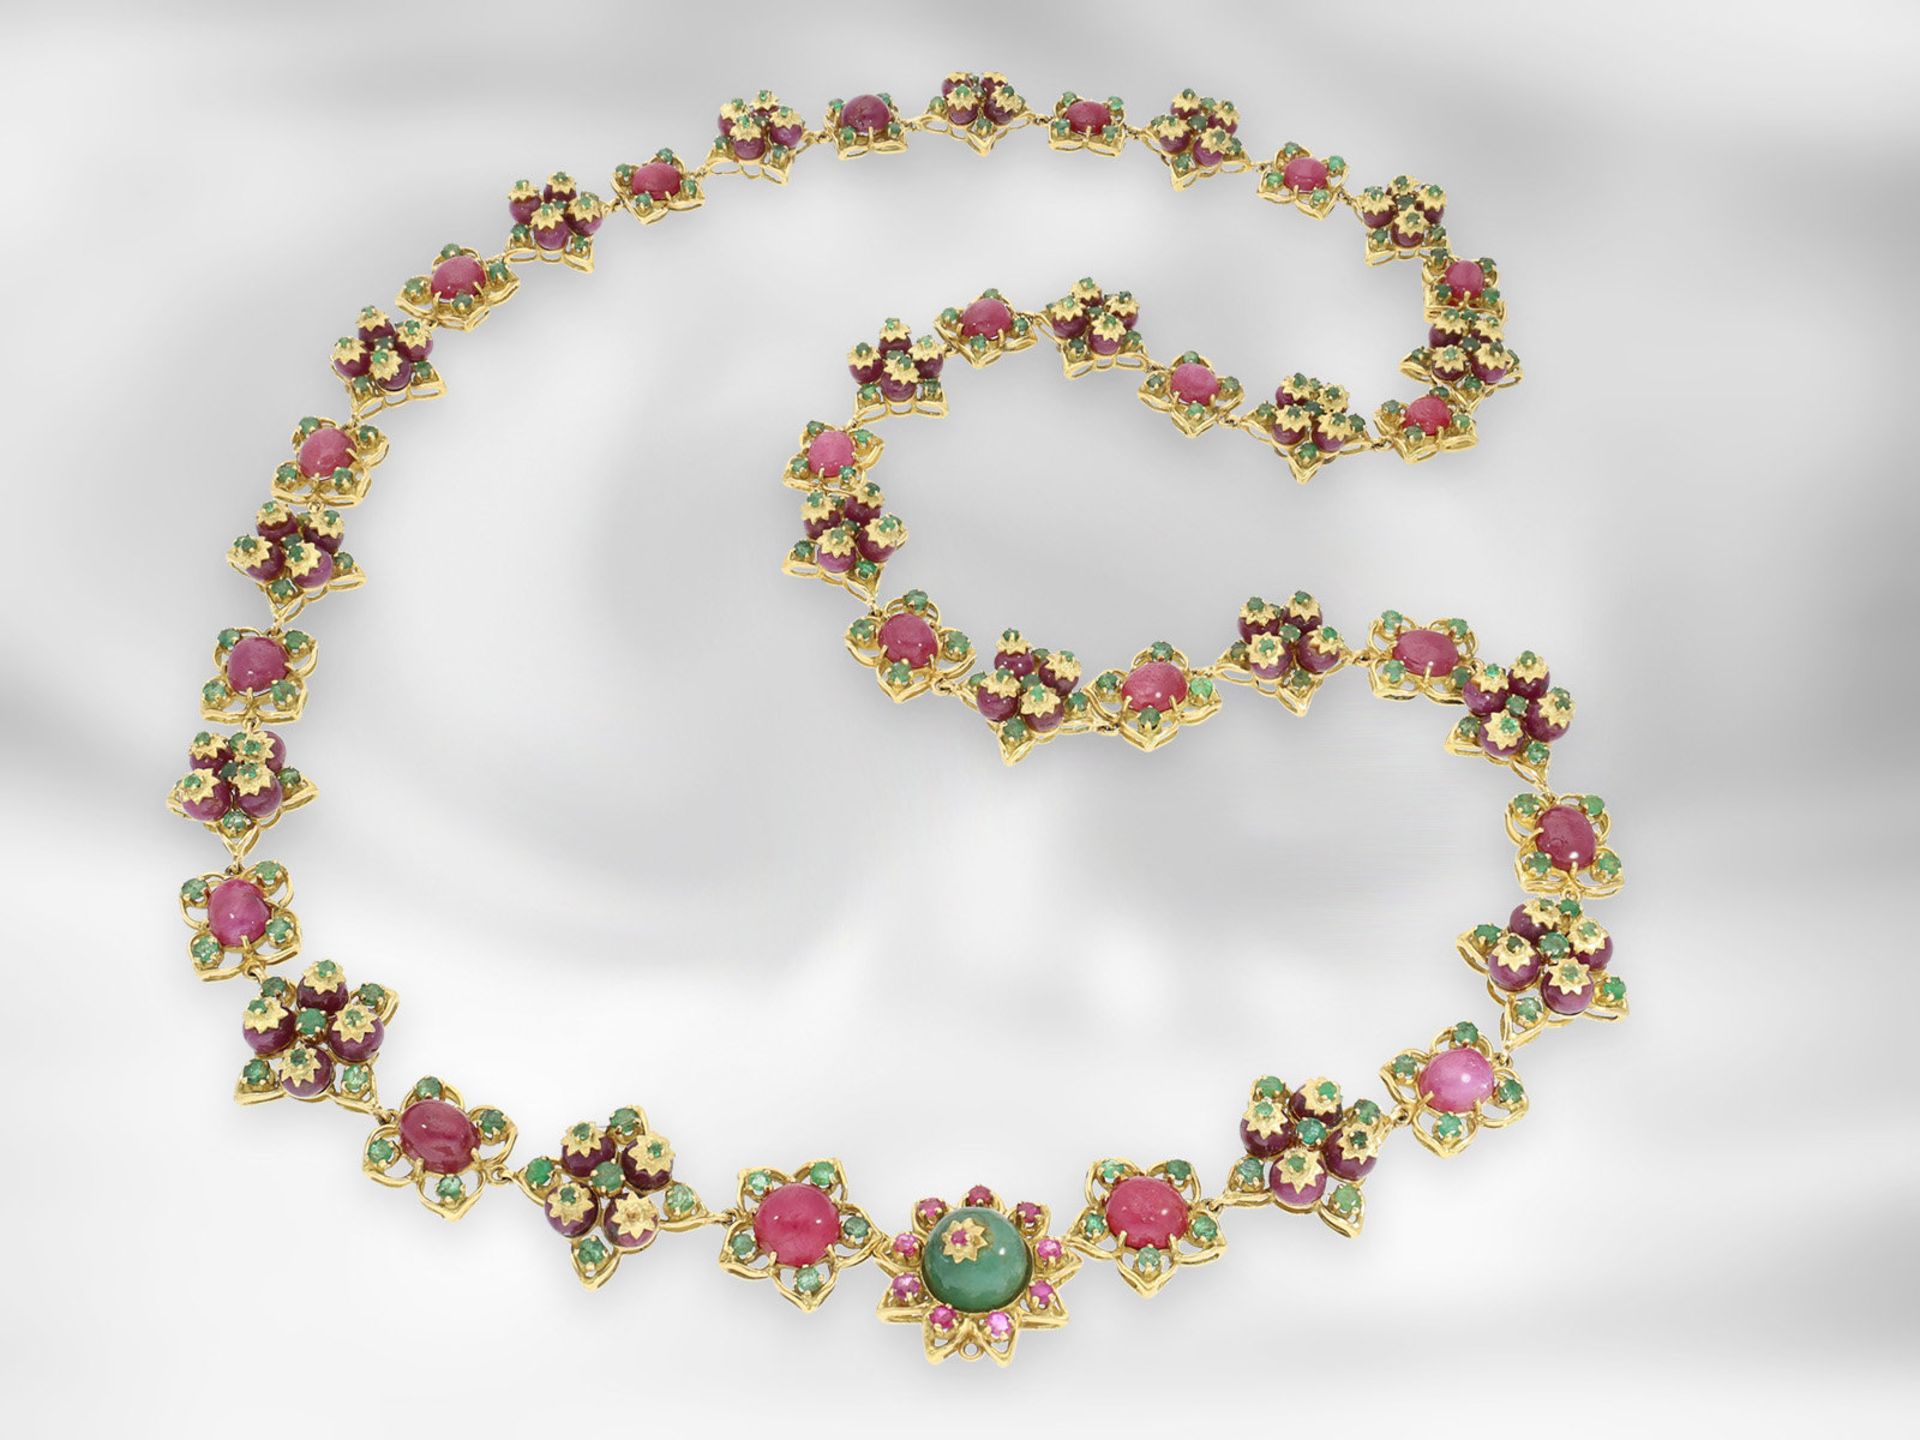 Kette/Collier: hochdekoratives, opulent mit Rubinen und Smaragden besetztes antikes Collier, insgesa